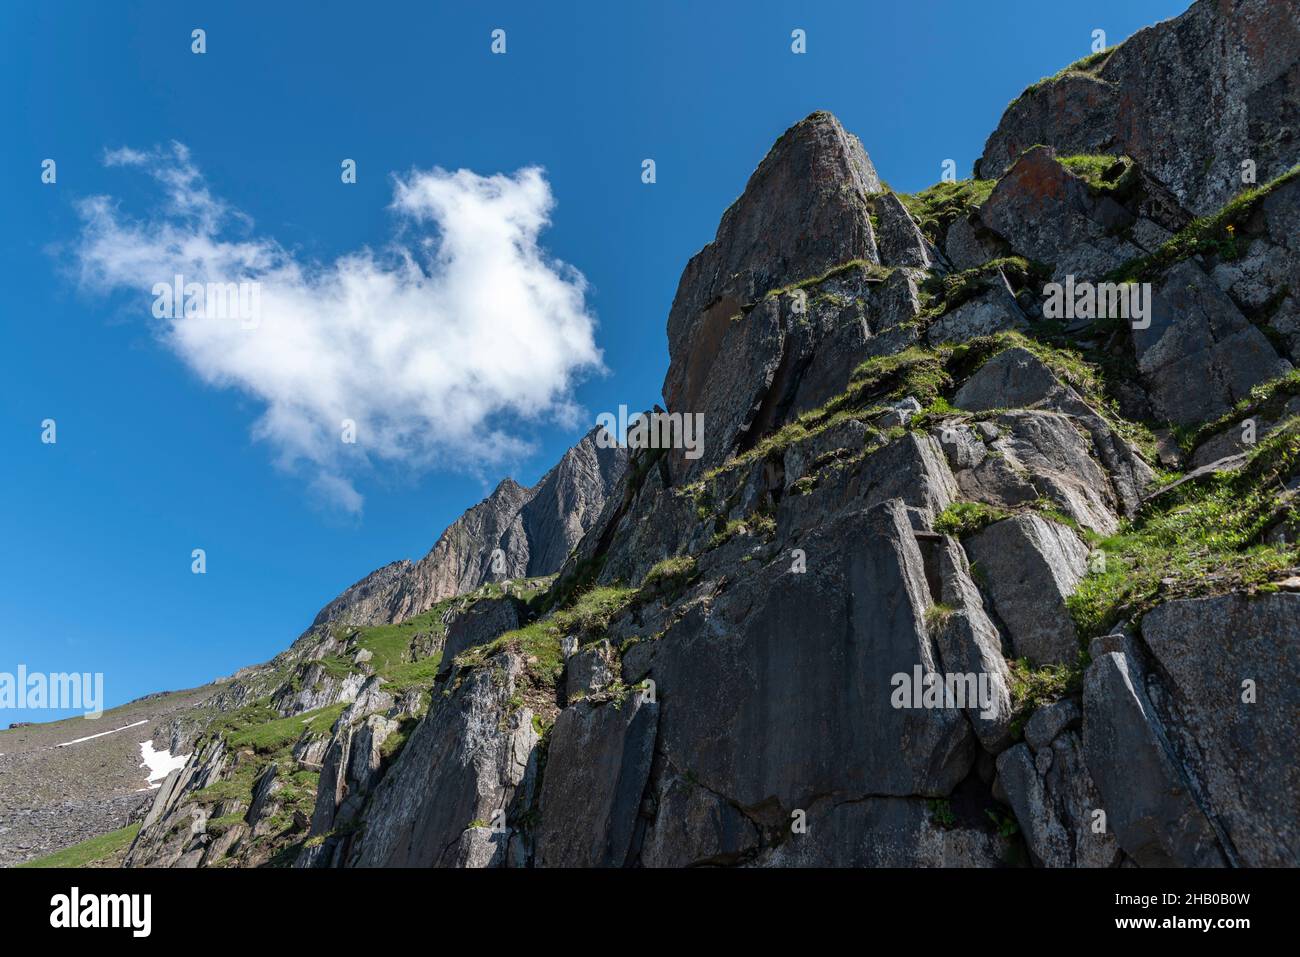 Alpine rocky landscape on the mountain Nufenenstock below the Nufenen Pass, Ulrichen, Valais, Switzerland, Europe Stock Photo